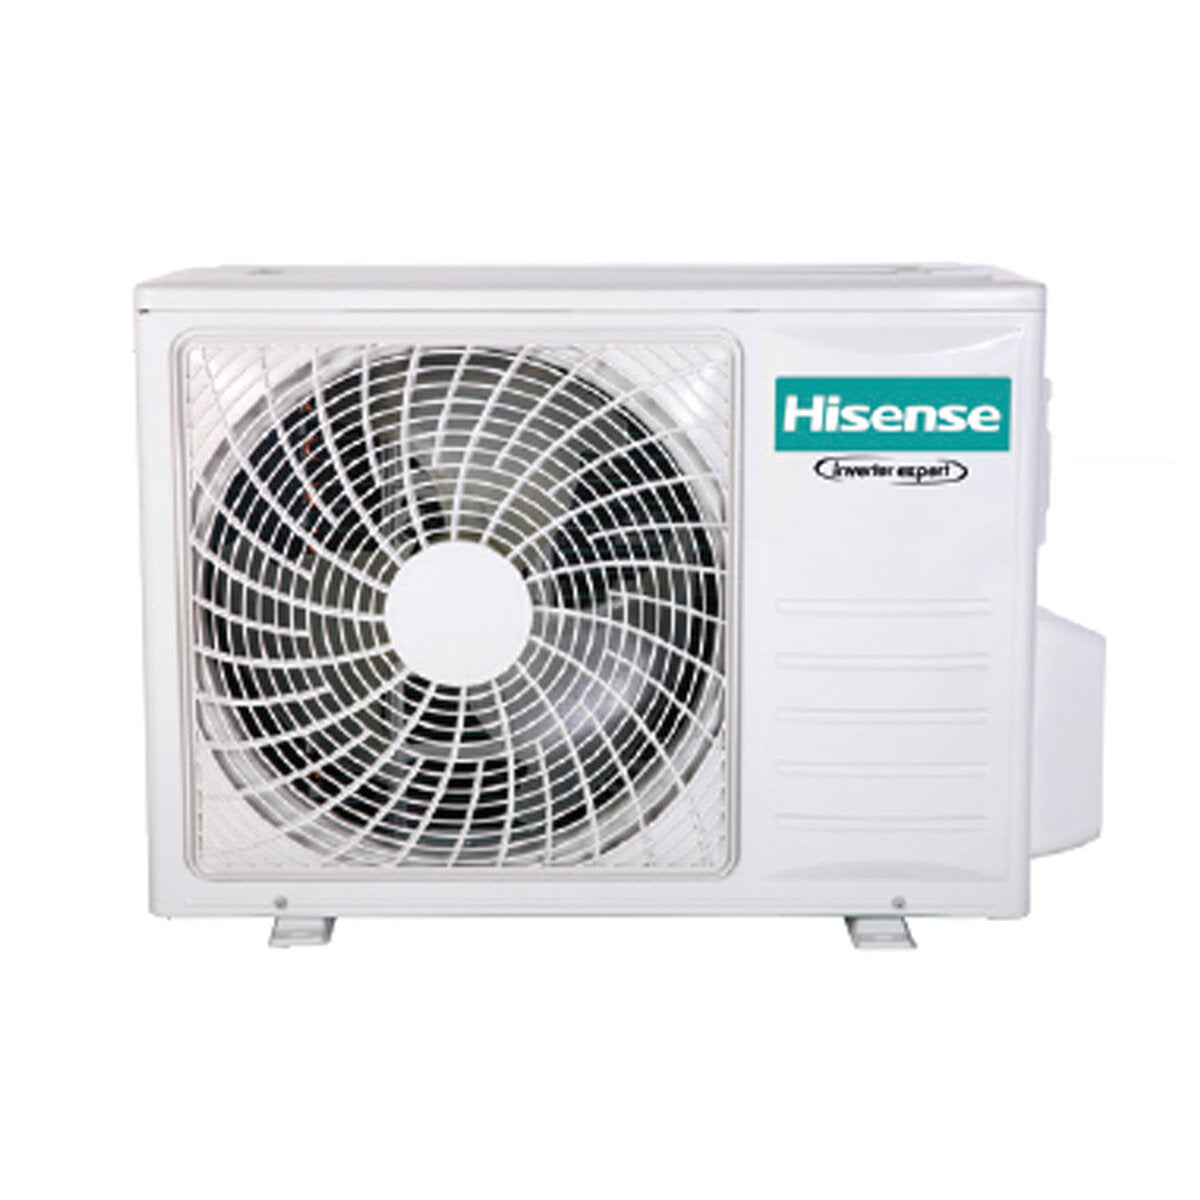 Hisense Hi-Comfort Trial Split Klimaanlage 7000+7000+9000 BTU Inverter A++ WLAN Außengerät 6,3 kW